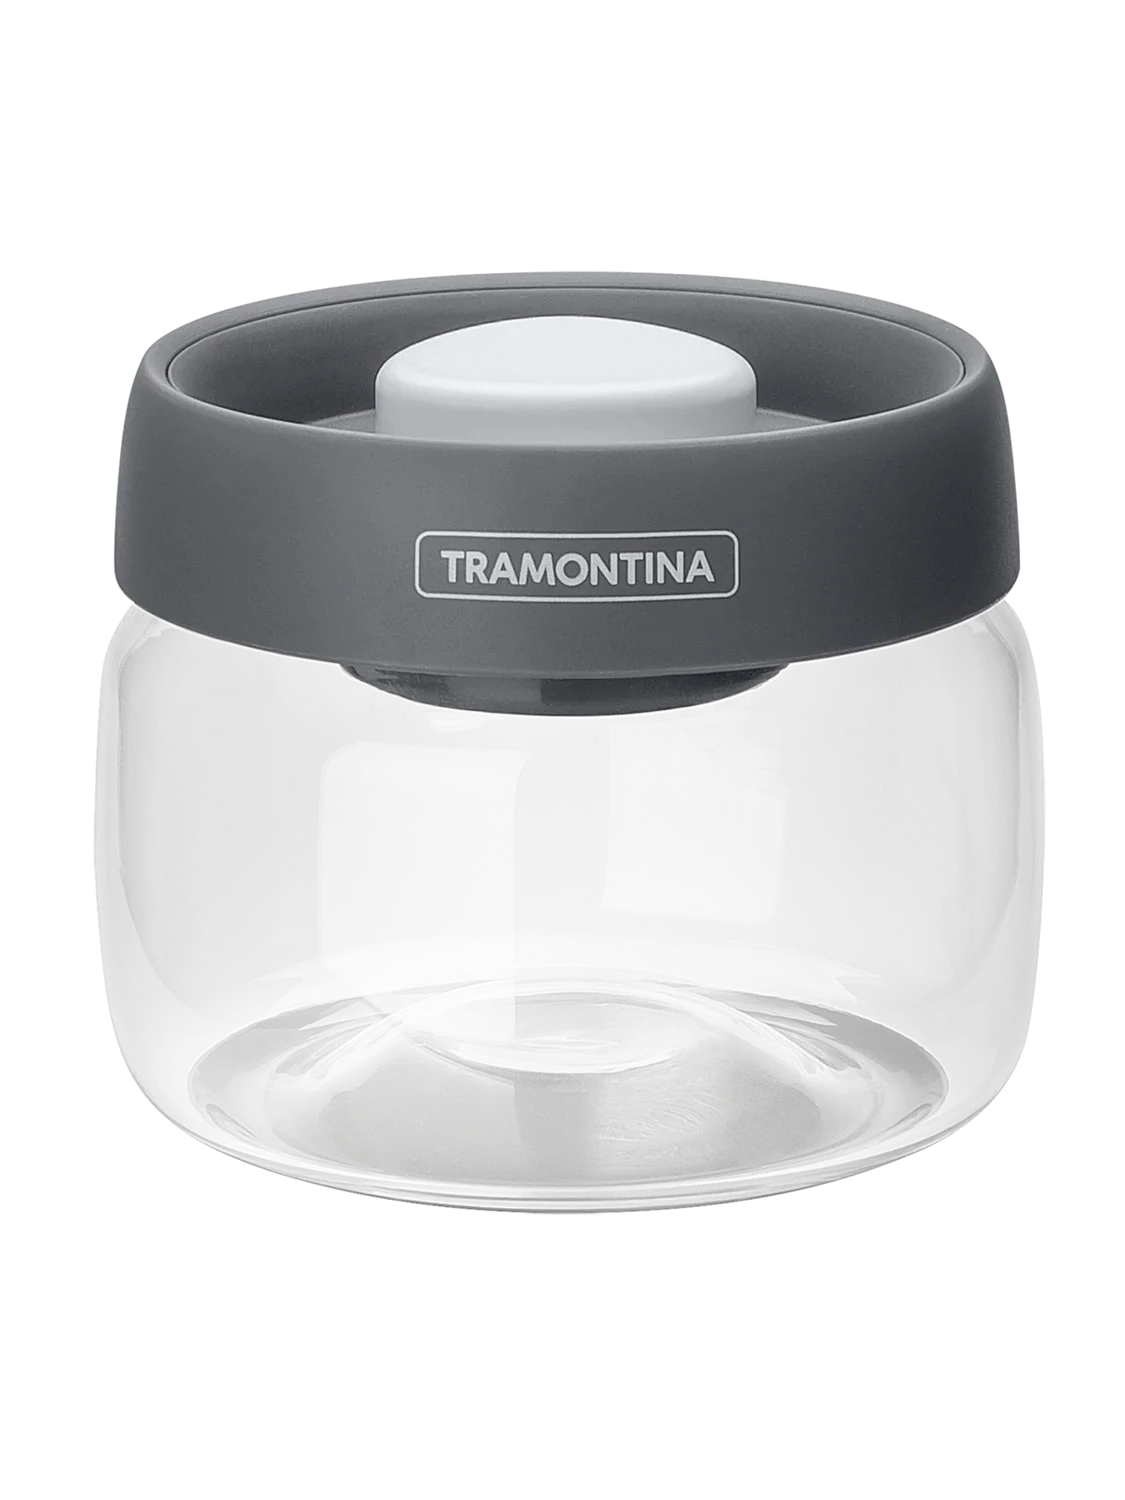 Tramontina 61225040 Purezza üveg tárolóedény vákum fedővel